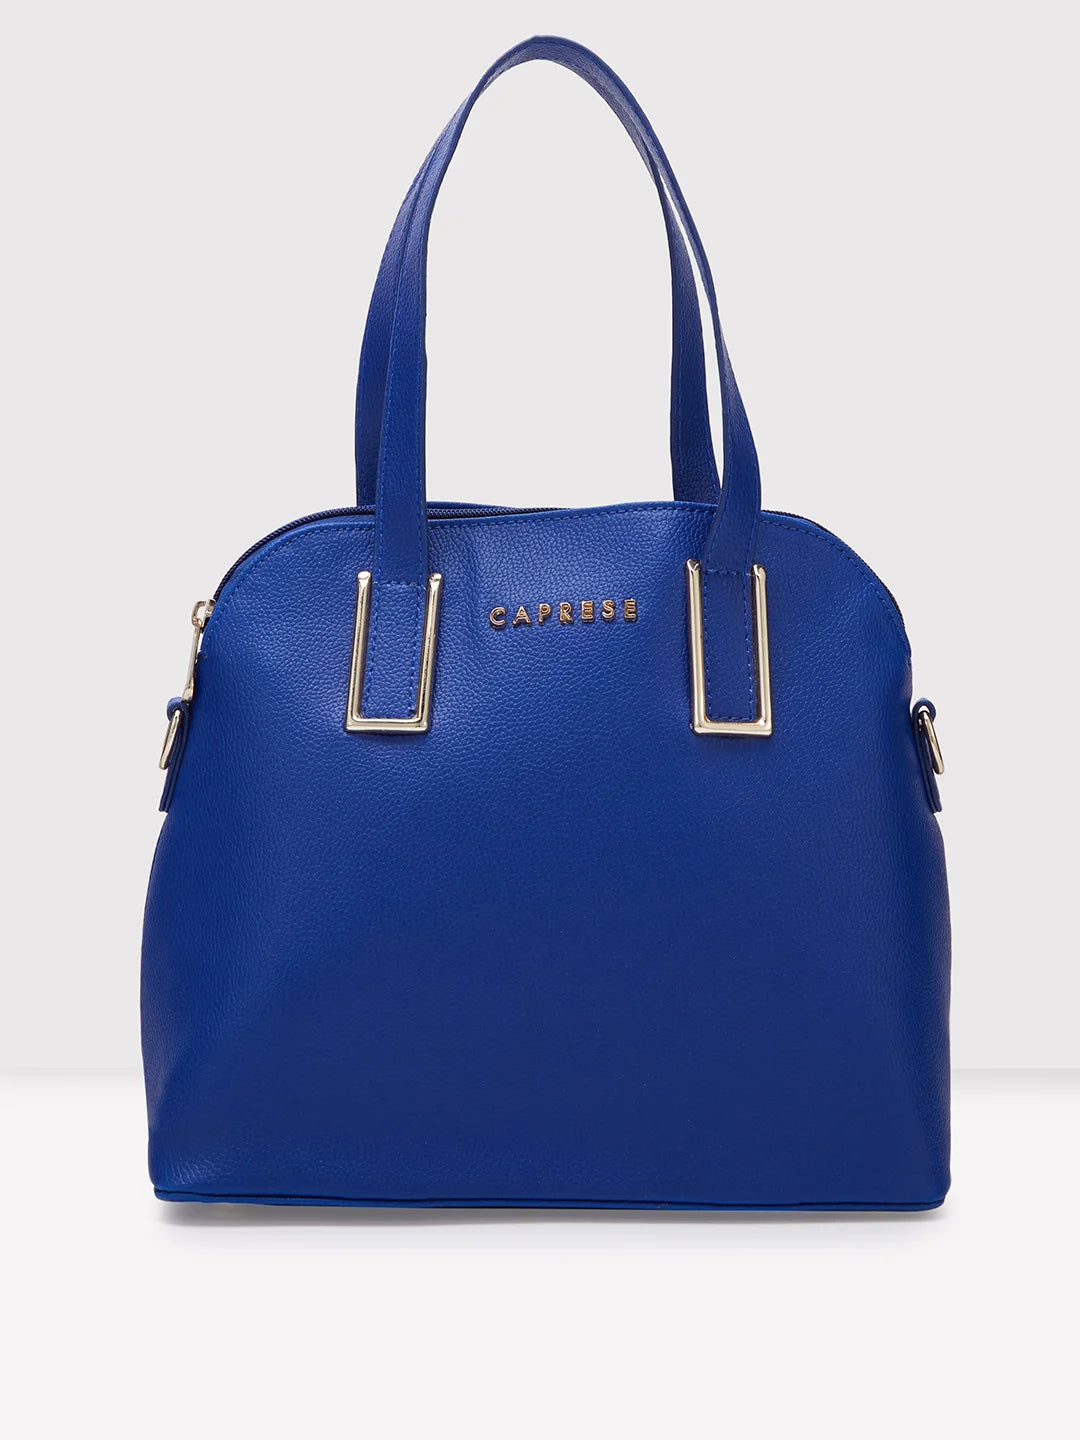 Buy Caprese Medium Grey Casual Tote Handbag online